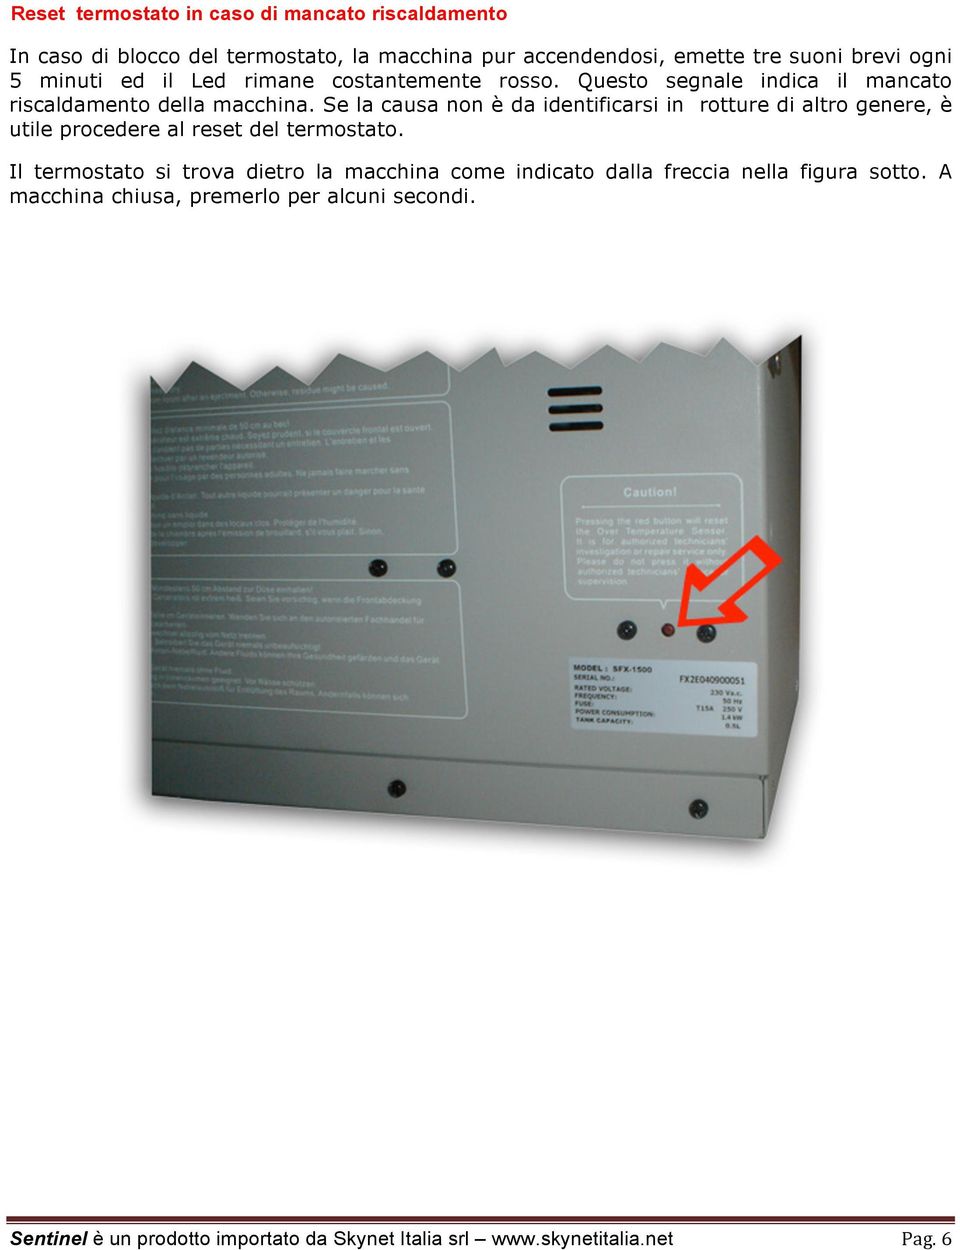 Se la causa non è da identificarsi in rotture di altro genere, è utile procedere al reset del termostato.